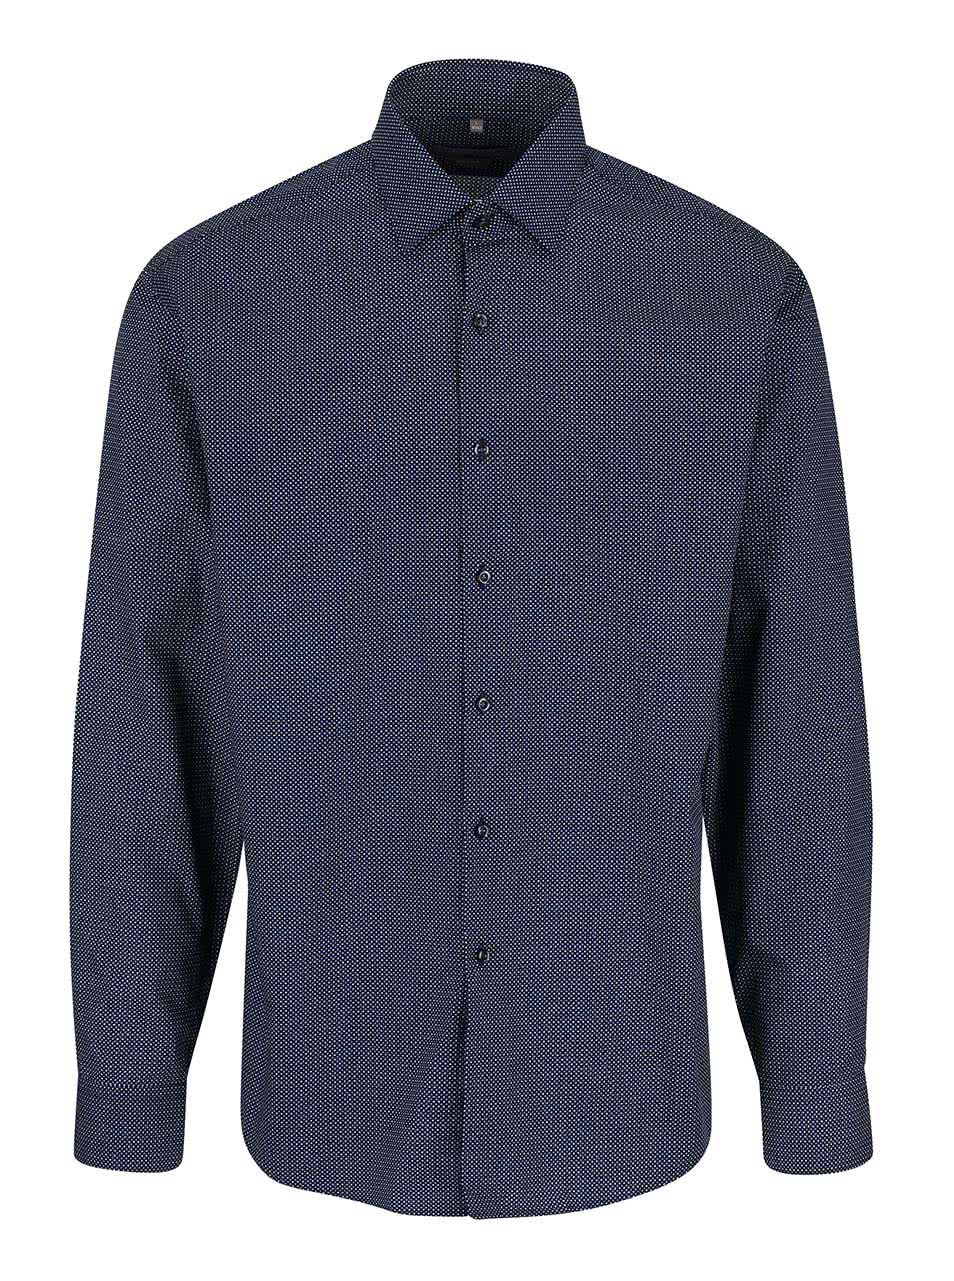 Tmavě modrá formální košile s jemným vzorem Seven Seas